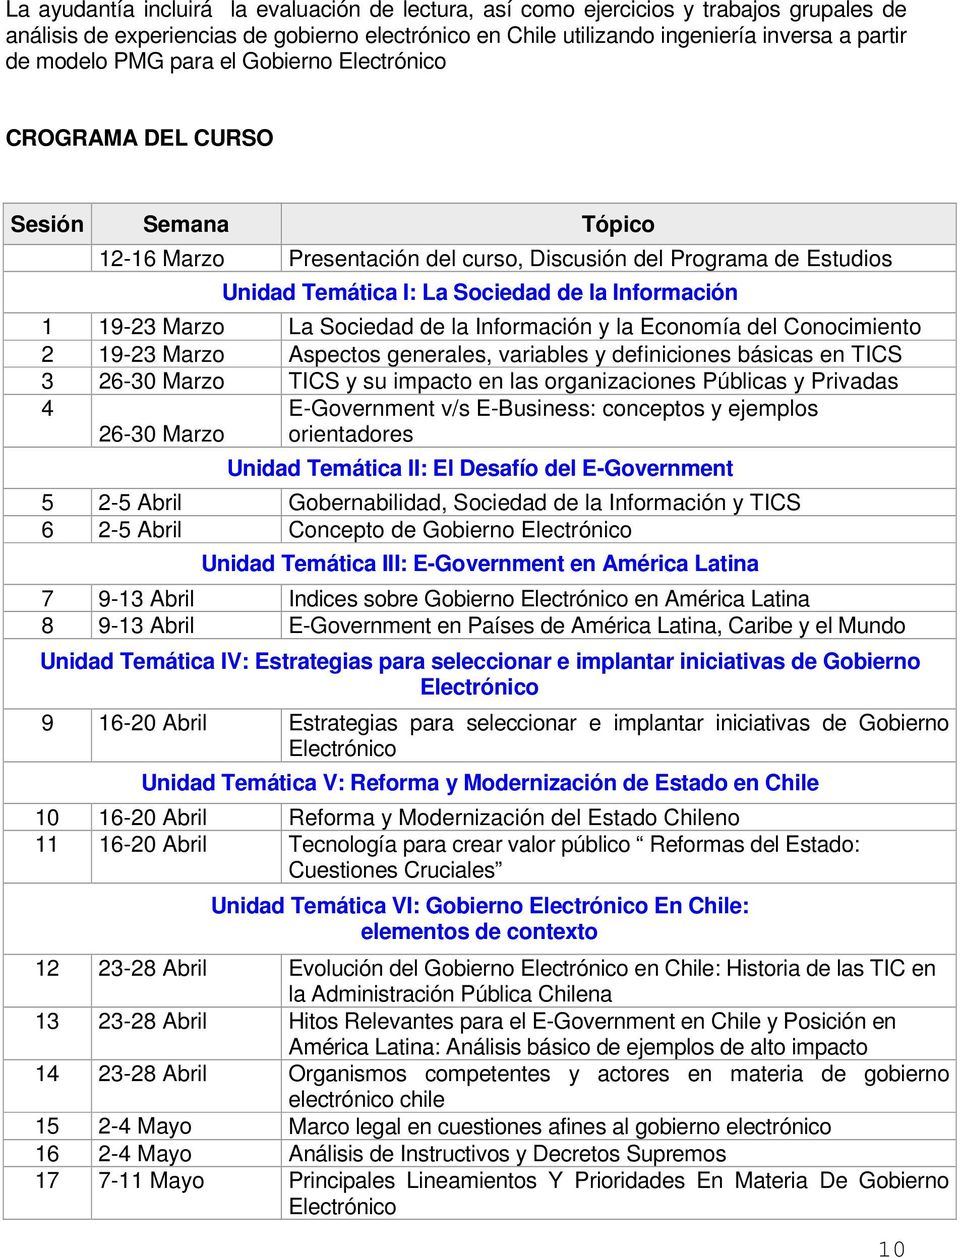 Sociedad de la Información y la Economía del Conocimiento 2 19-23 Marzo Aspectos generales, variables y definiciones básicas en TICS 3 26-30 Marzo TICS y su impacto en las organizaciones Públicas y